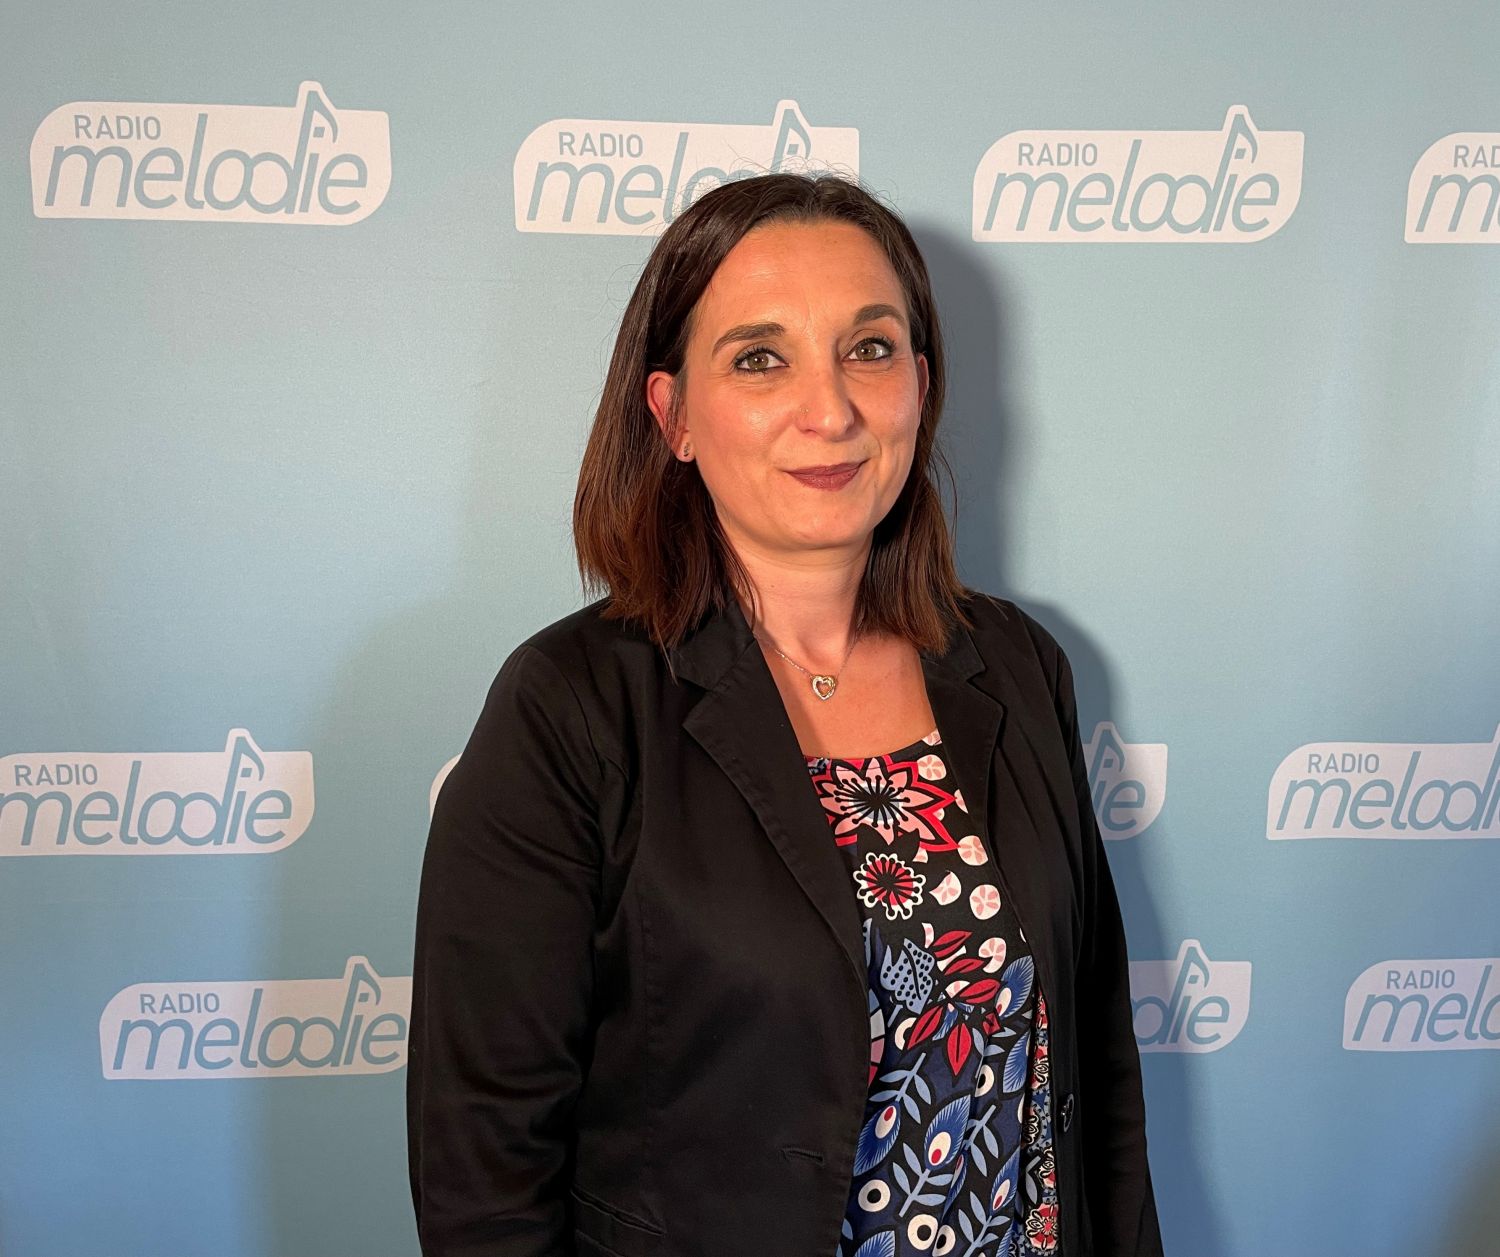 Législatives 2022 : pourquoi voter pour Sabrina Sellini à Sarreguemines ?